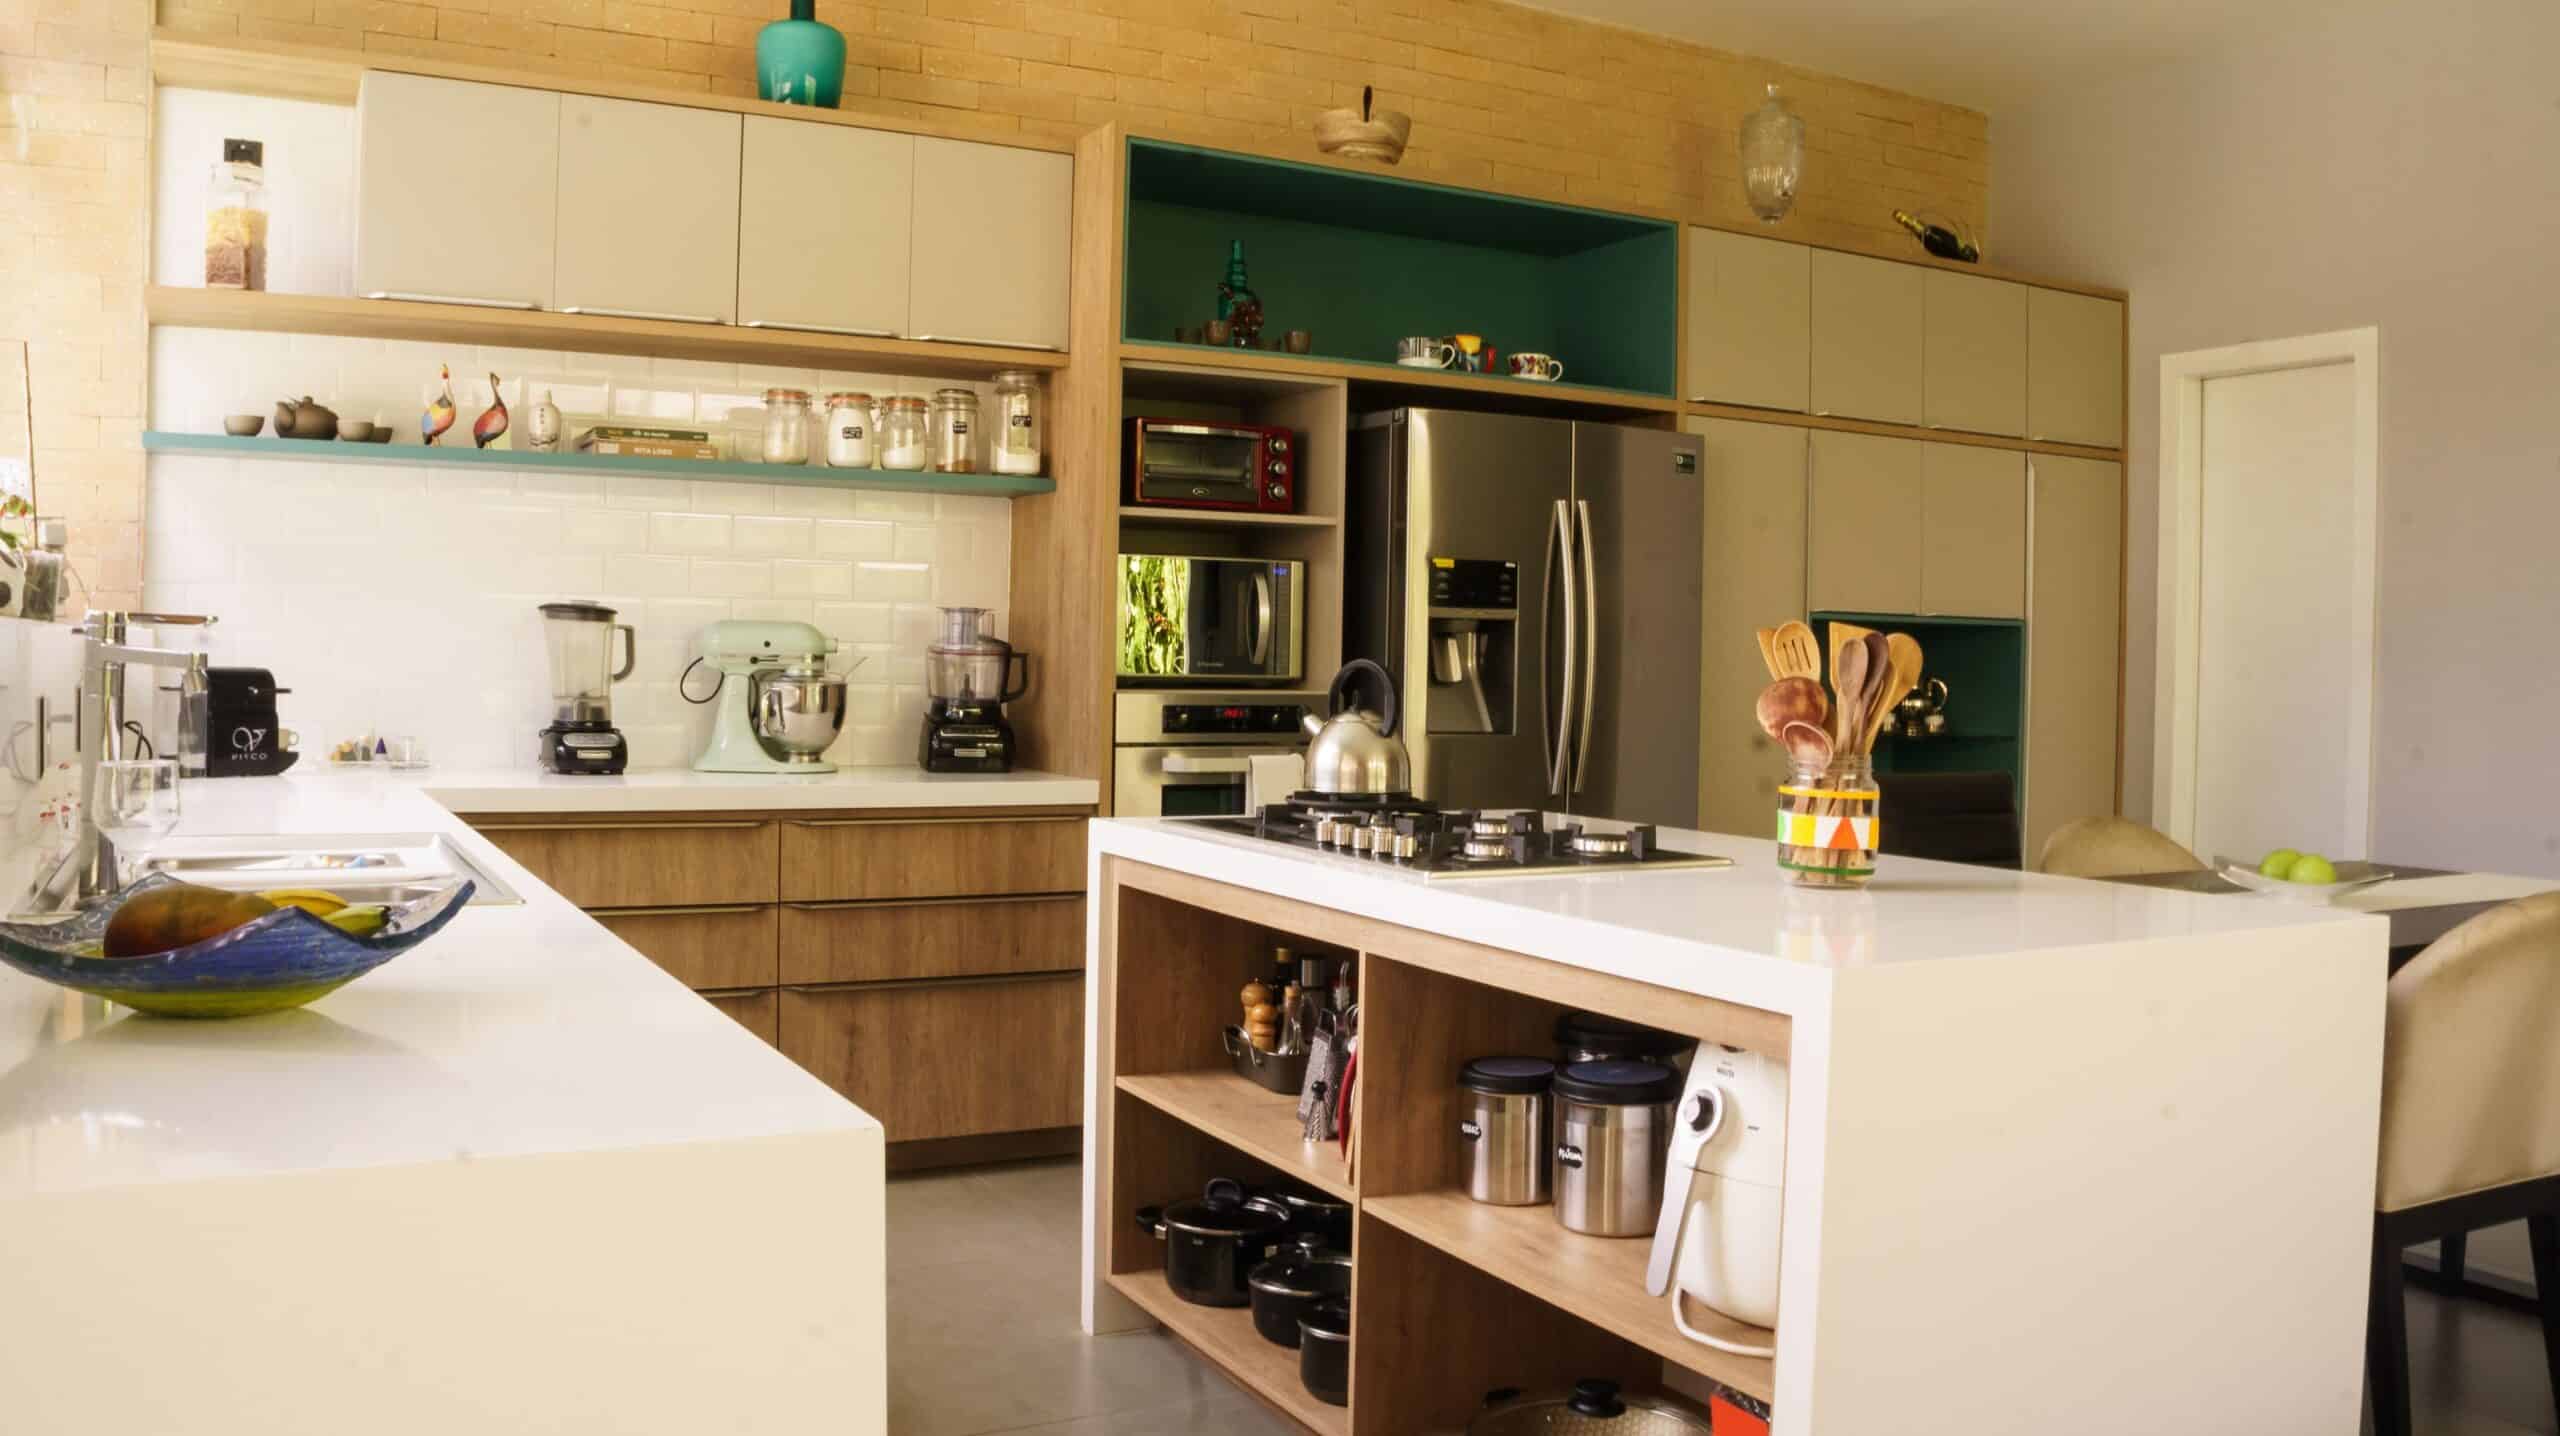 Wnętrze jasnej kuchni wyposażonej w nowoczesny sprzęt kuchenny, który ułatwia gotowanie.